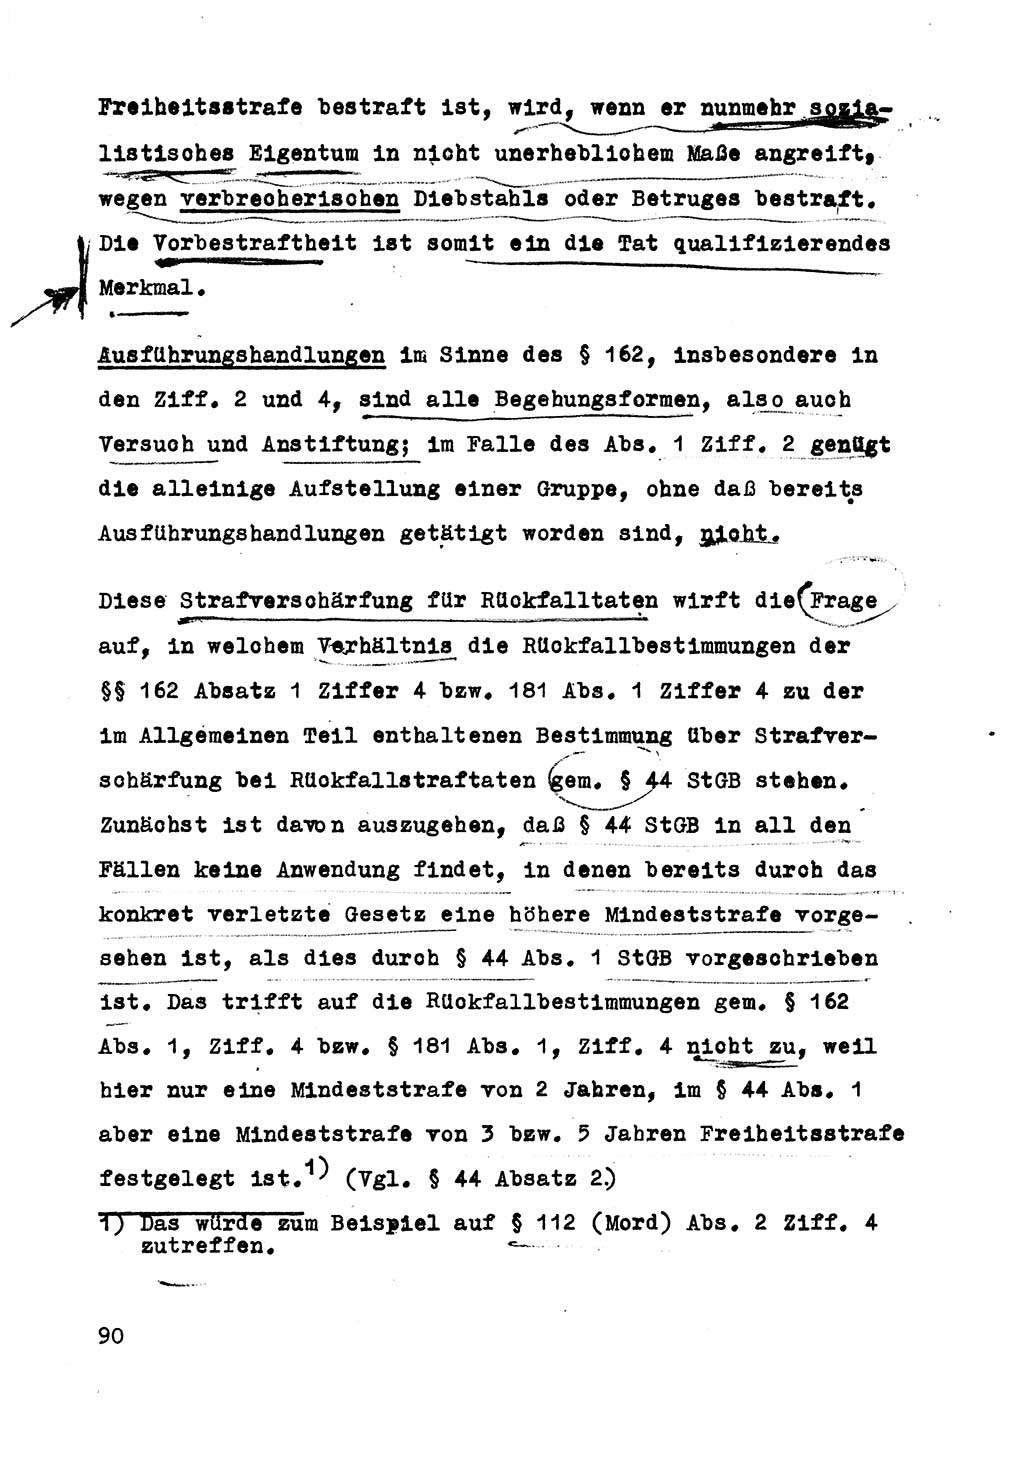 Strafrecht der DDR (Deutsche Demokratische Republik), Besonderer Teil, Lehrmaterial, Heft 5 1970, Seite 90 (Strafr. DDR BT Lehrmat. H. 5 1970, S. 90)